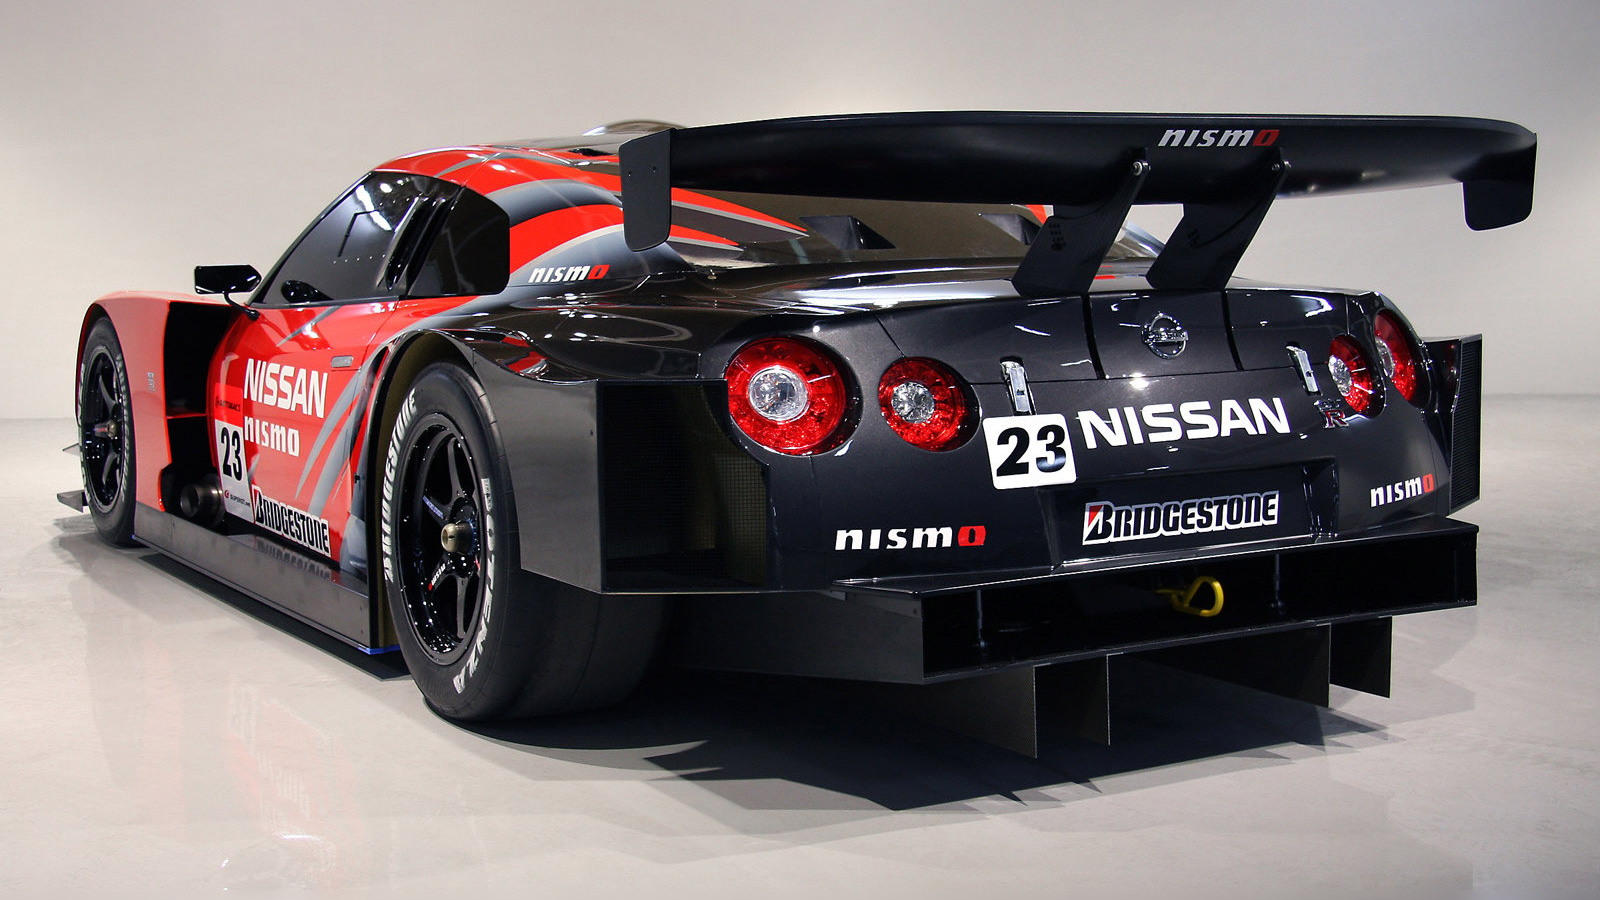 2008 Nissan GT-R GT500 Super GT race car